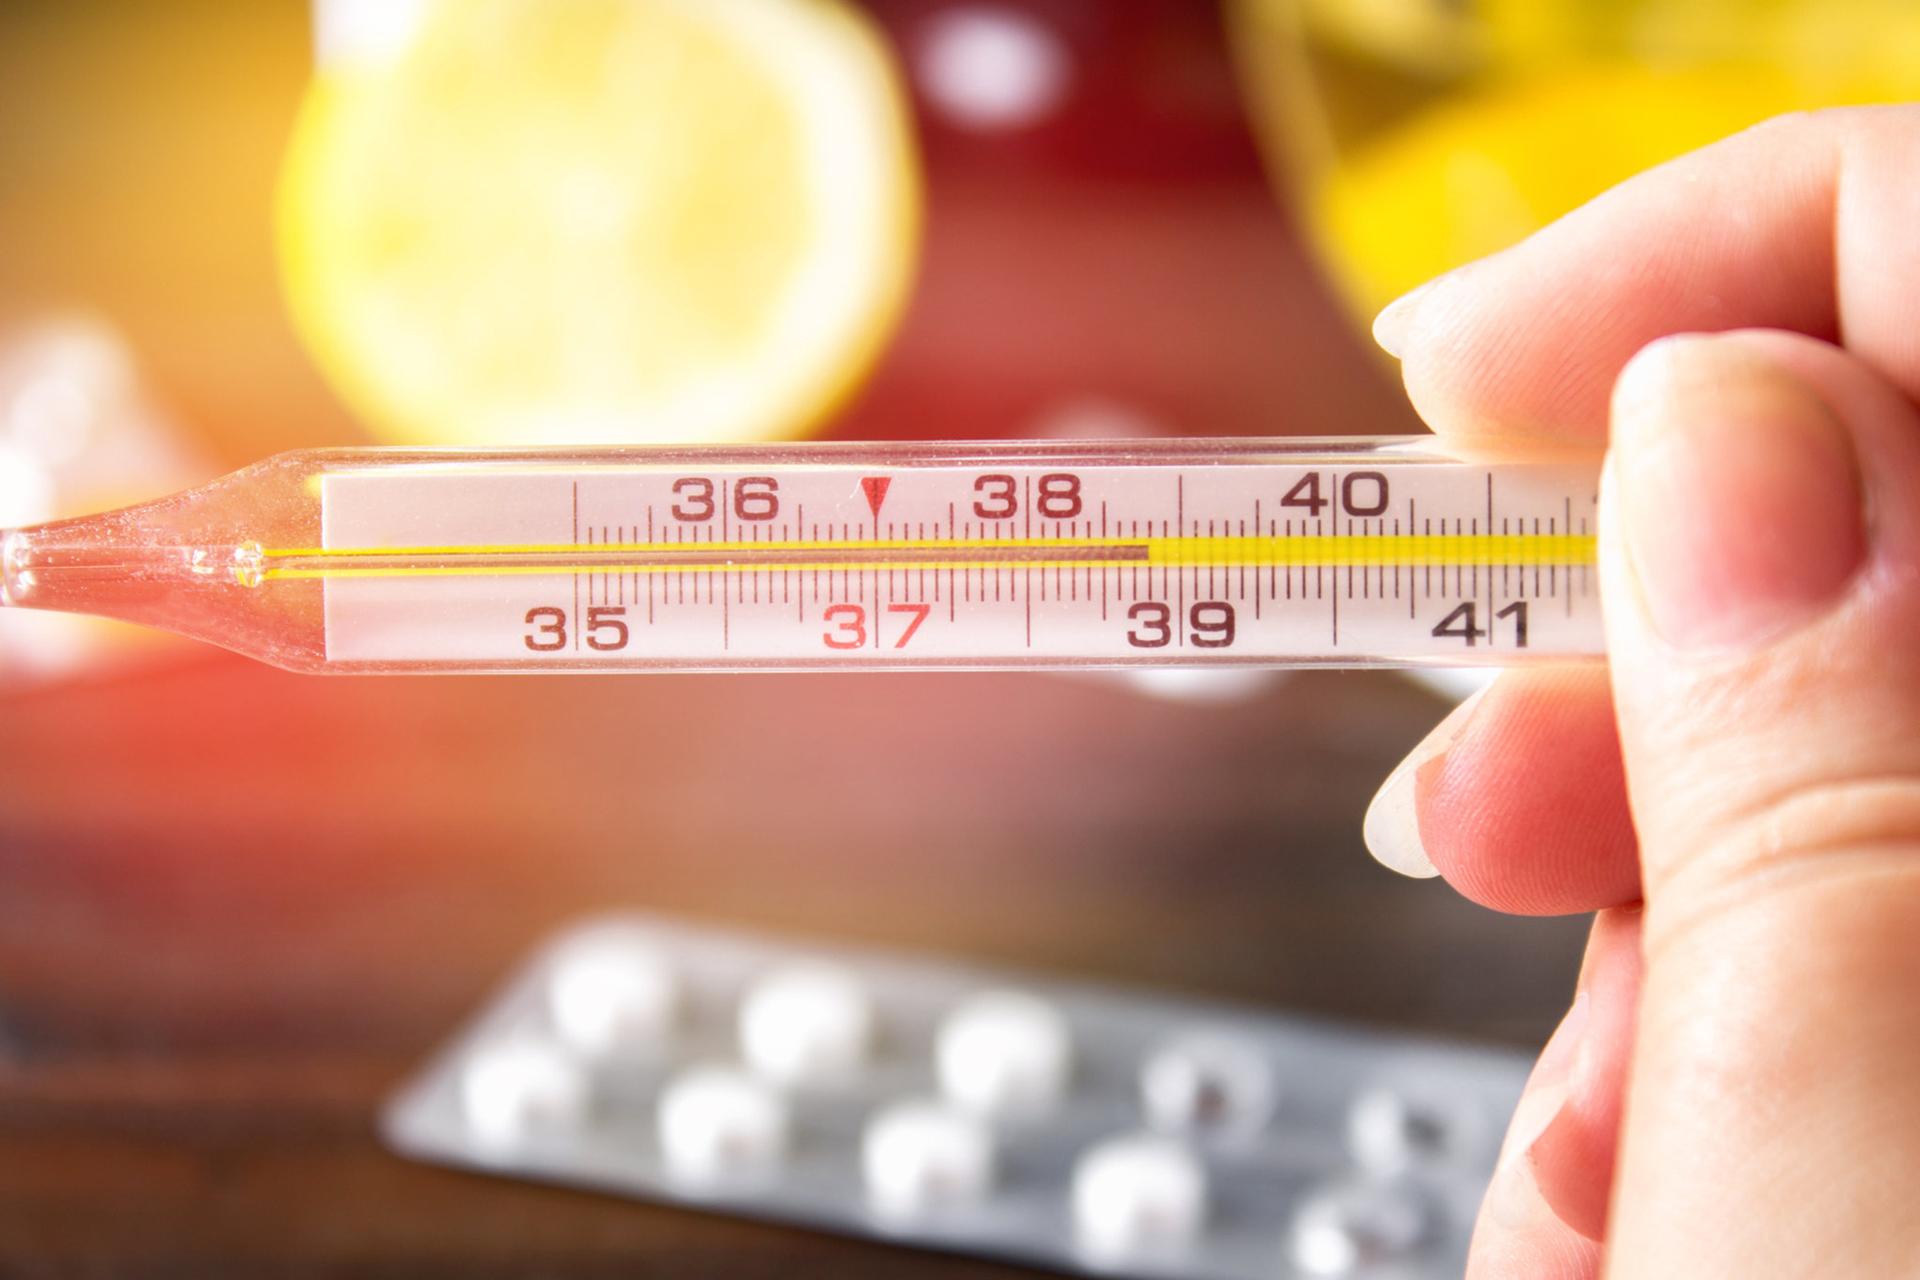 đo nhiệt độ cơ thể bằng nhiệt kế